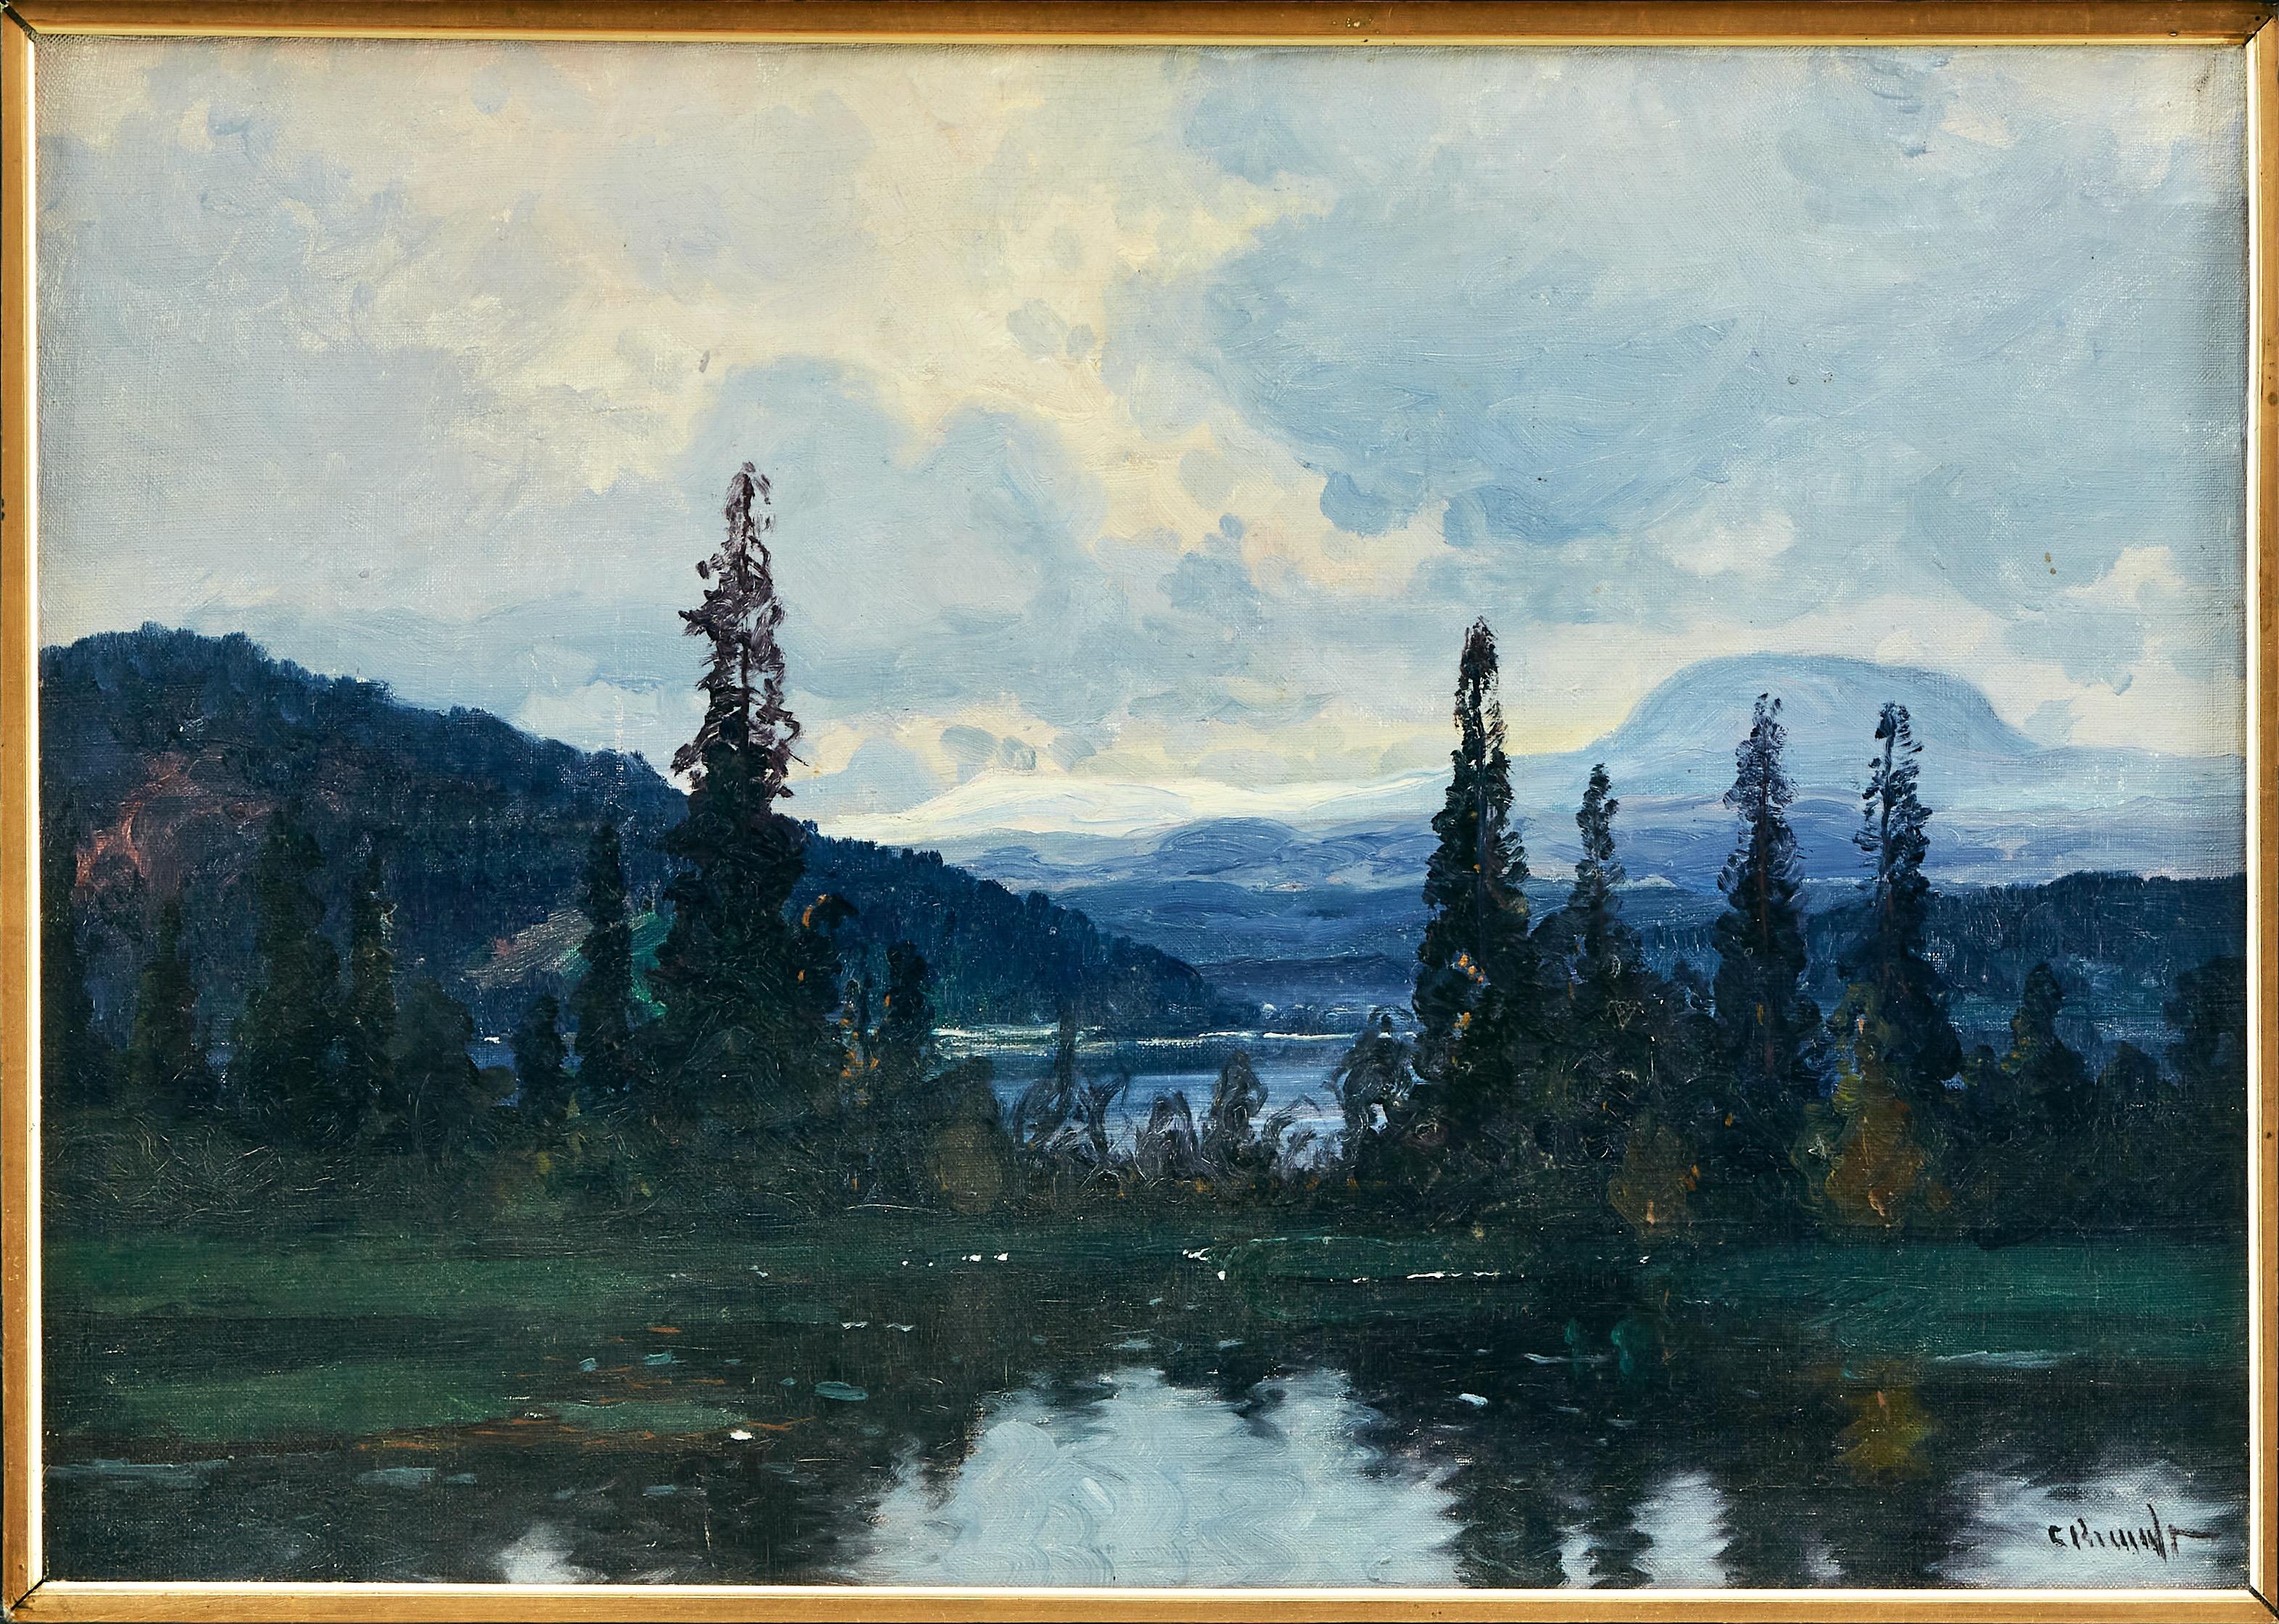 Paysage de montagne suédois avec un lac fluvial peint par Carl August Brandt (1871-1930). Huile sur toile peinte au début des années 1900. Signé C.C. Brandt. La vue représente la Ljungan, une rivière de 399 km de long, en direction de la montagne